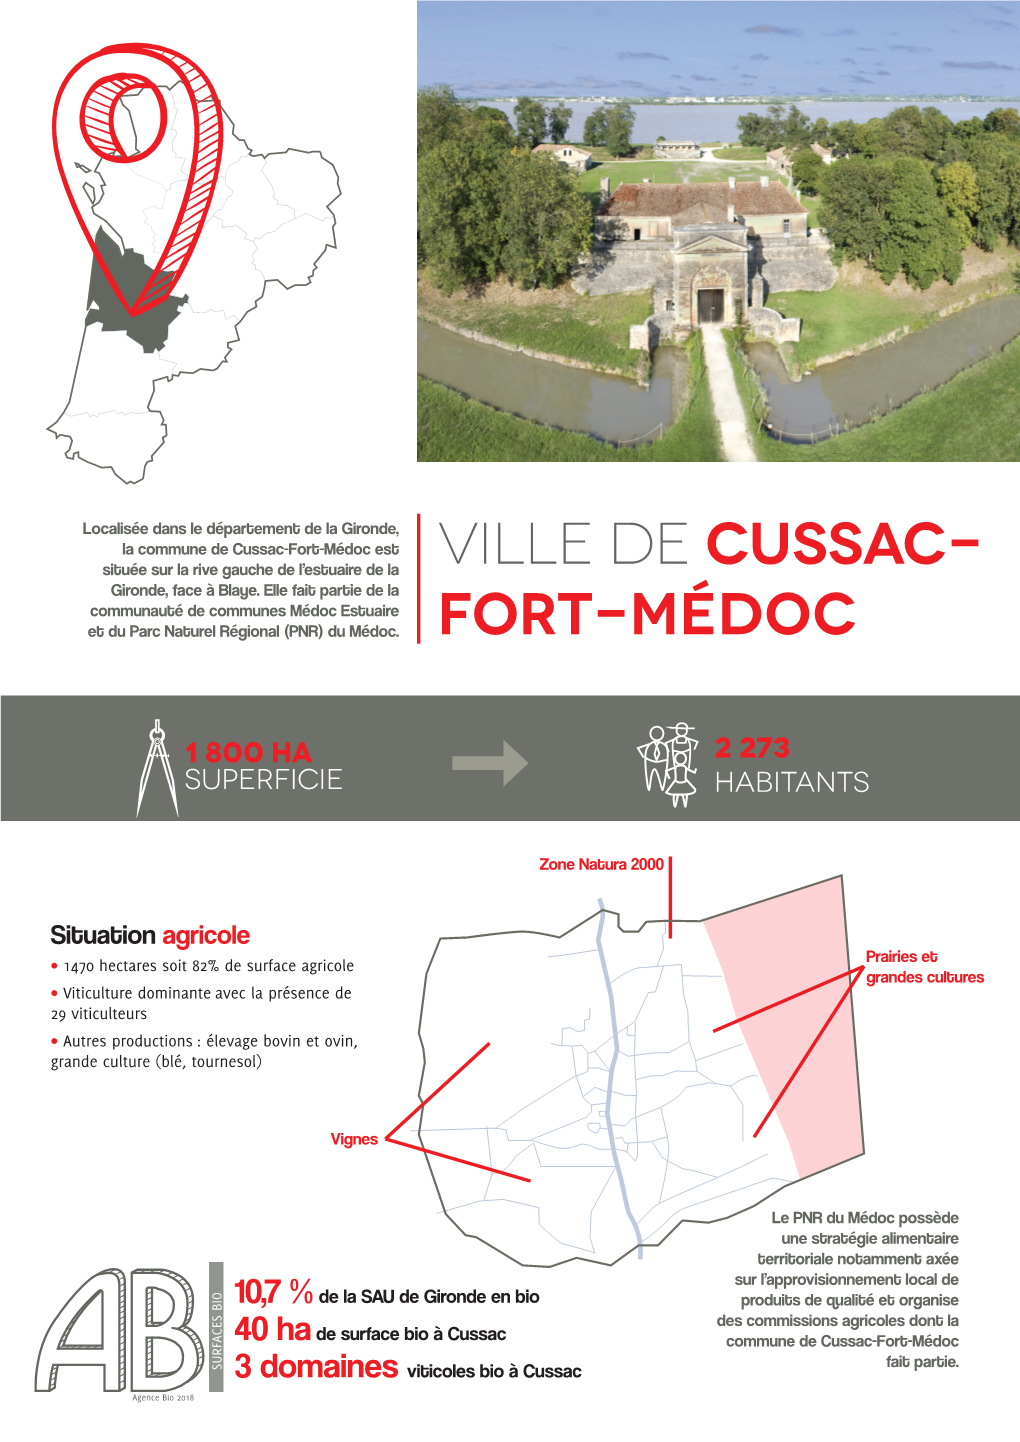 Ville De Cussac- Fort-Médoc